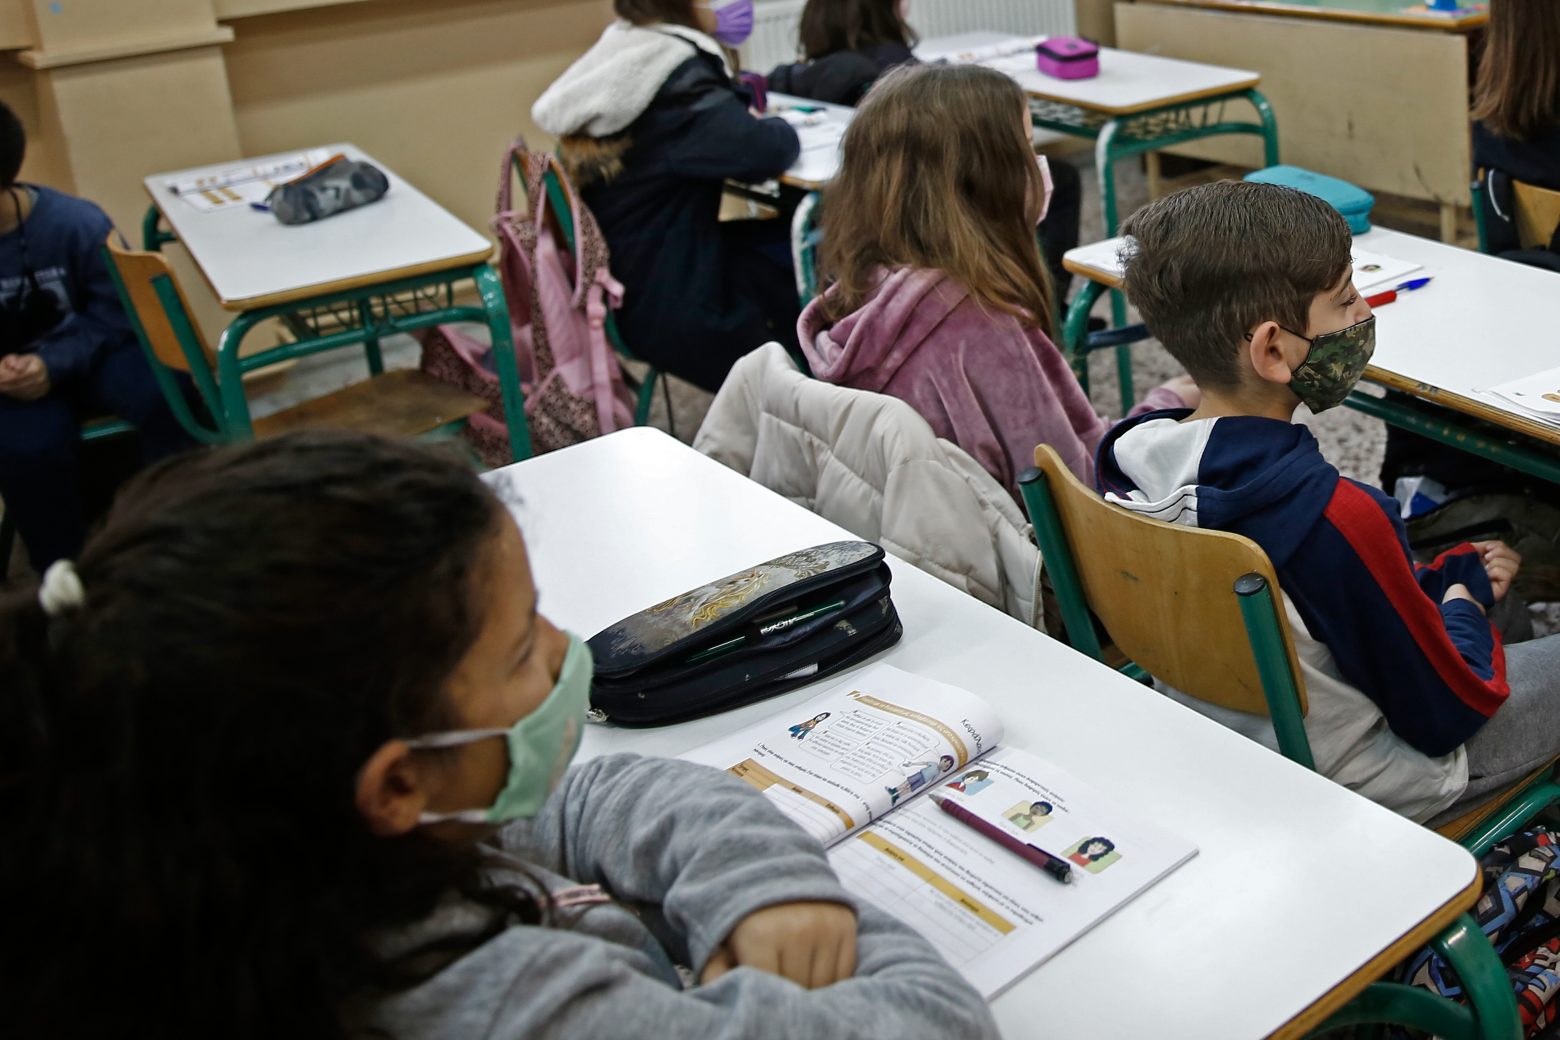 Κεραμέως στο MEGA - Οι τρεις λόγοι που αποφασίσαμε άνοιγμα των σχολείων στις 10 Ιανουαρίου